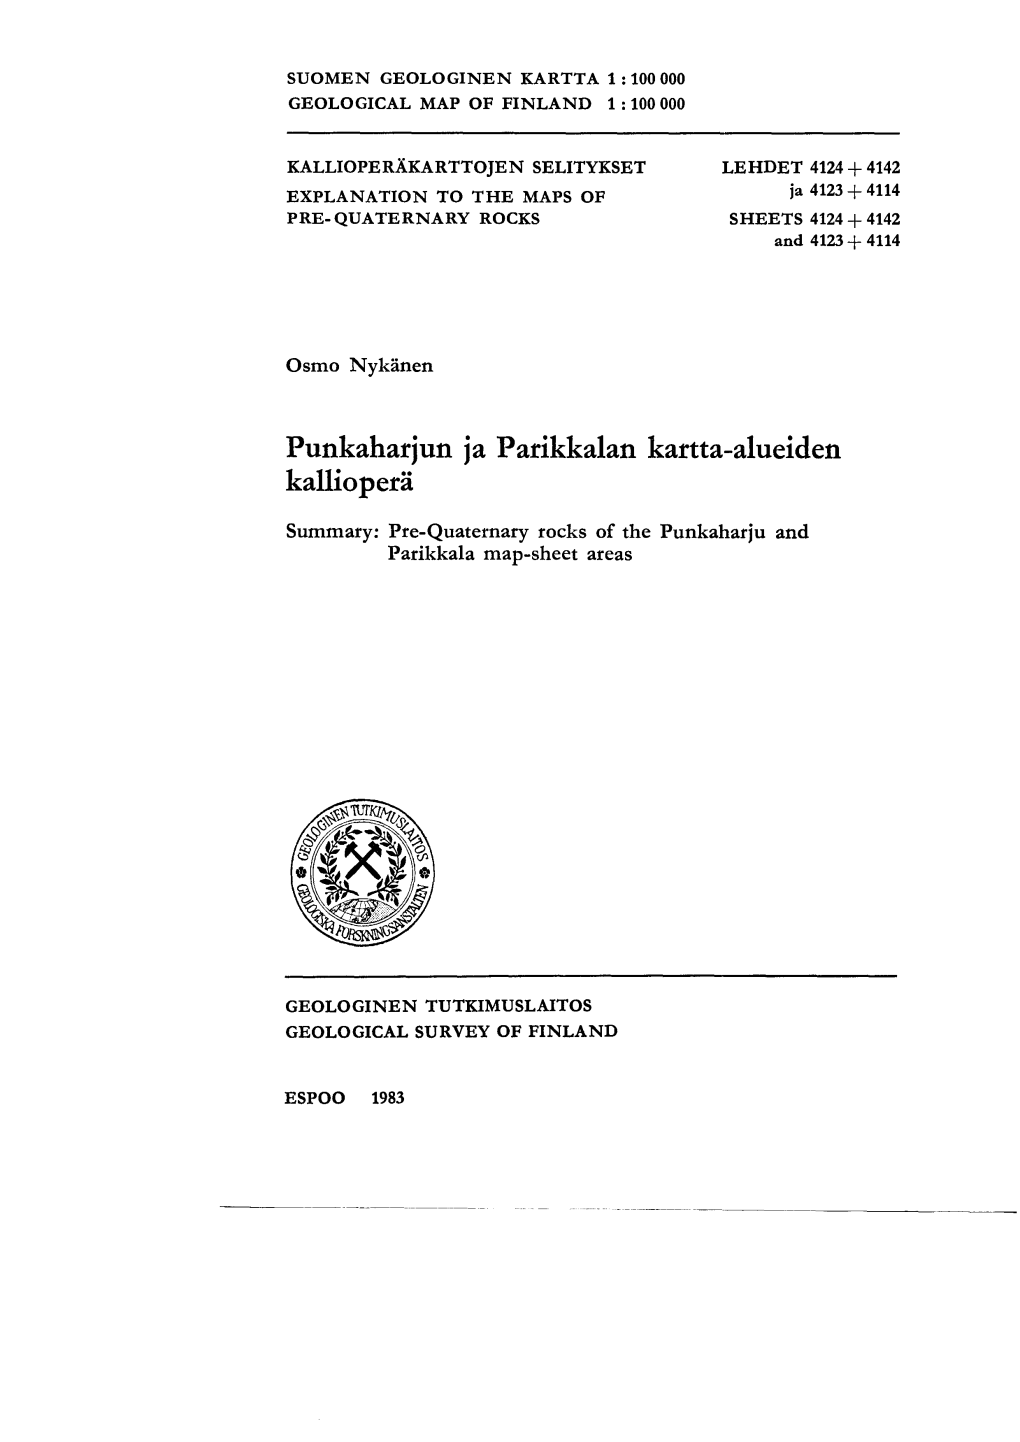 Punkaharjun Ja Parikkalan Kartta-Alueiden Kalliopera Summary: Pre-Quaternary Rocks of the Punkaharju and Parikkala Map-Sheet Areas